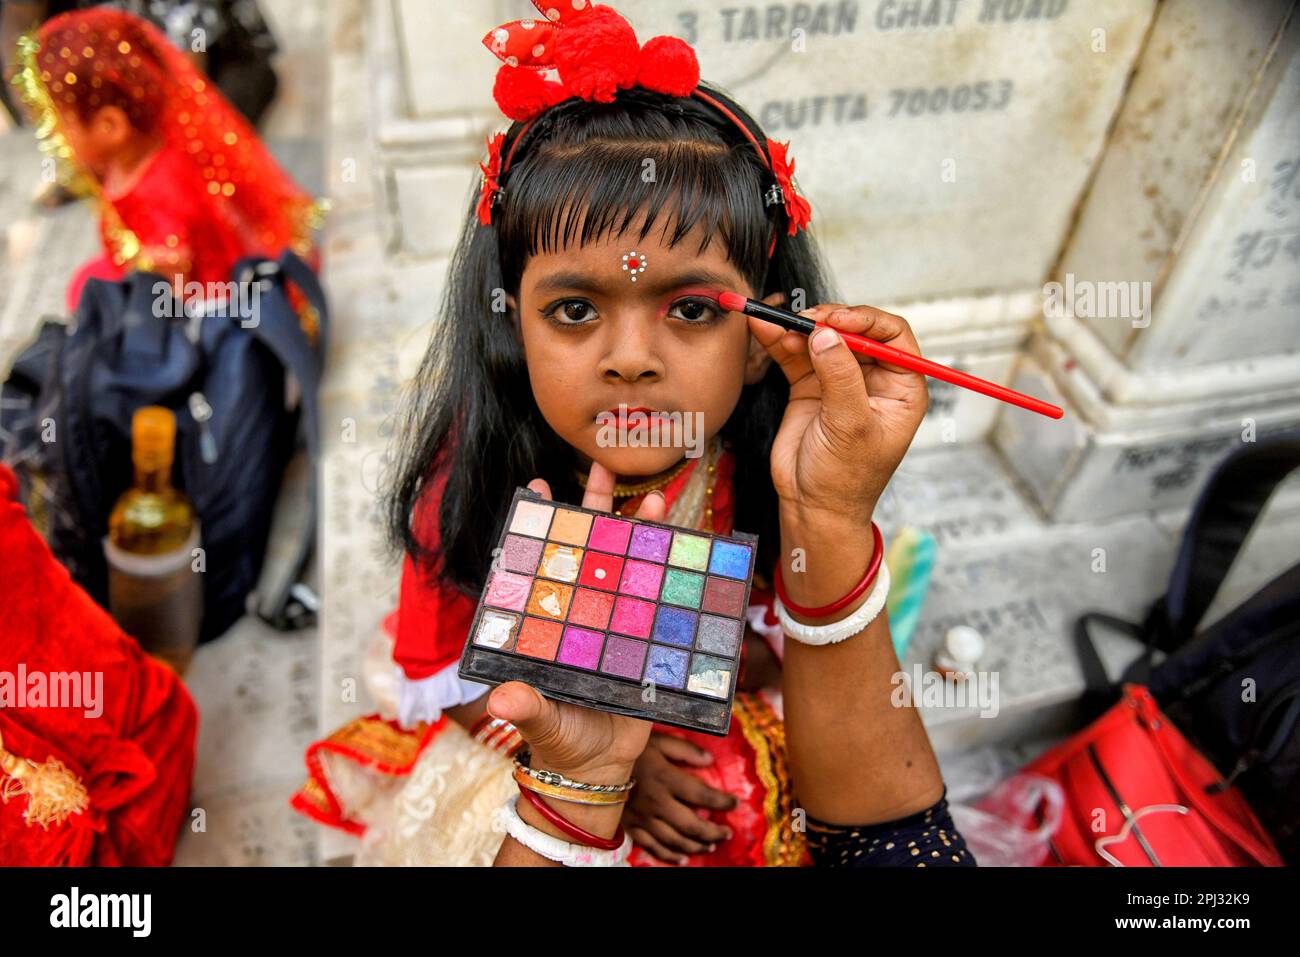 Ein kleines Mädchen, das gesehen wurde, wie es sich für das Kumari-Puja-Ritual vorbereitete. Kumari Puja ist eine indische hinduistische Tradition, die hauptsächlich während der Durga Puja/Basanti Puja/Navratri nach Hindu-Kalender gefeiert wird. Kumari beschreibt tatsächlich ein junges Mädchen im Alter von 1 bis 16 Jahren, das während des Übergangs von Ashtami/Navami tithi von Durga Puja/Navarintosh nach Hindu-Mythologie verehrt wird. Junge Mädchen, die während des Kumari Puja von ihren Müttern im Adyapith Tempel verehrt wurden, wird angenommen, dass Kumari Puja den Gläubigen und auch dem kleinen Mädchen viele Segen gewährt. Devotieren Stockfoto